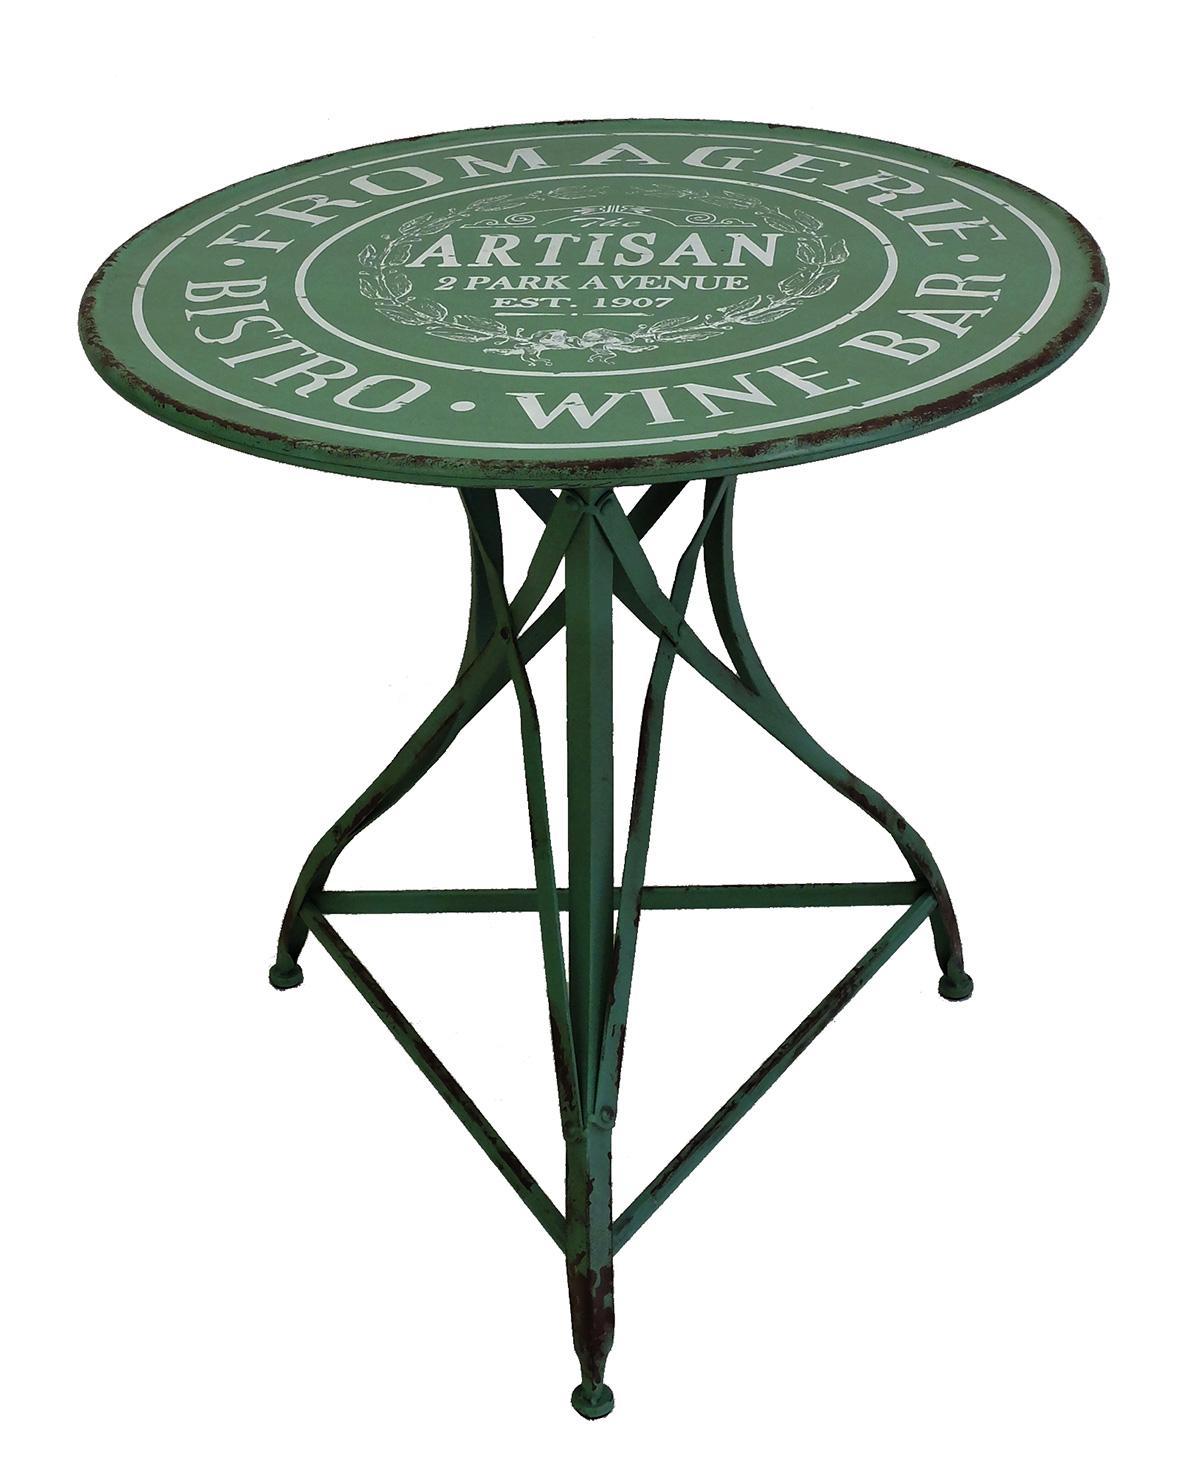 Outdoor-Set bestehend aus einem runden Tisch und zwei kleinen Sesseln für ein französisches Bistrot und eine Weinbar in New York. Der Deckel ist aus blassgrün lackiertem Eisen und trägt den Namen des Restaurants: The Artisan, 2 Park avenue.